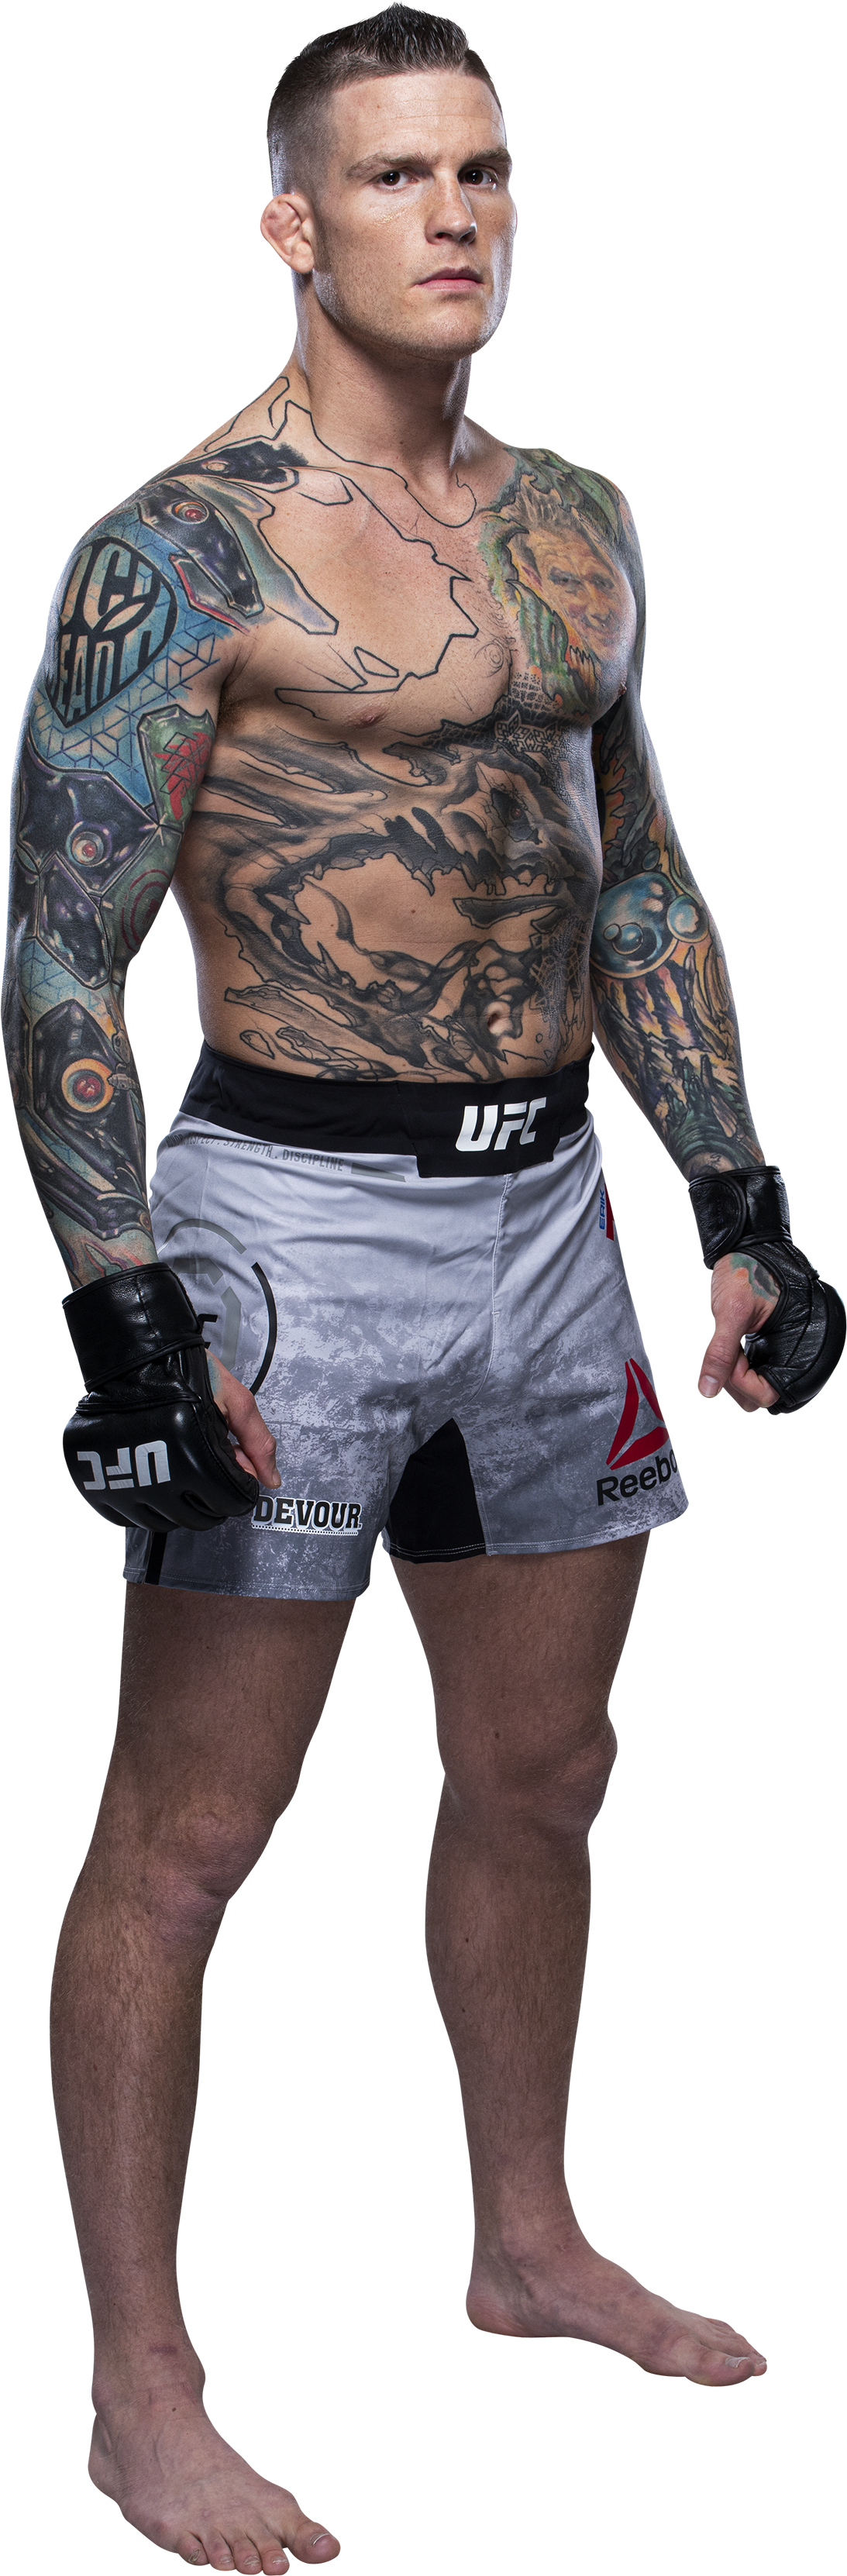 エリック・コク vs. ダスティン・ポワリエ | ファイトカード | UFC JAPAN